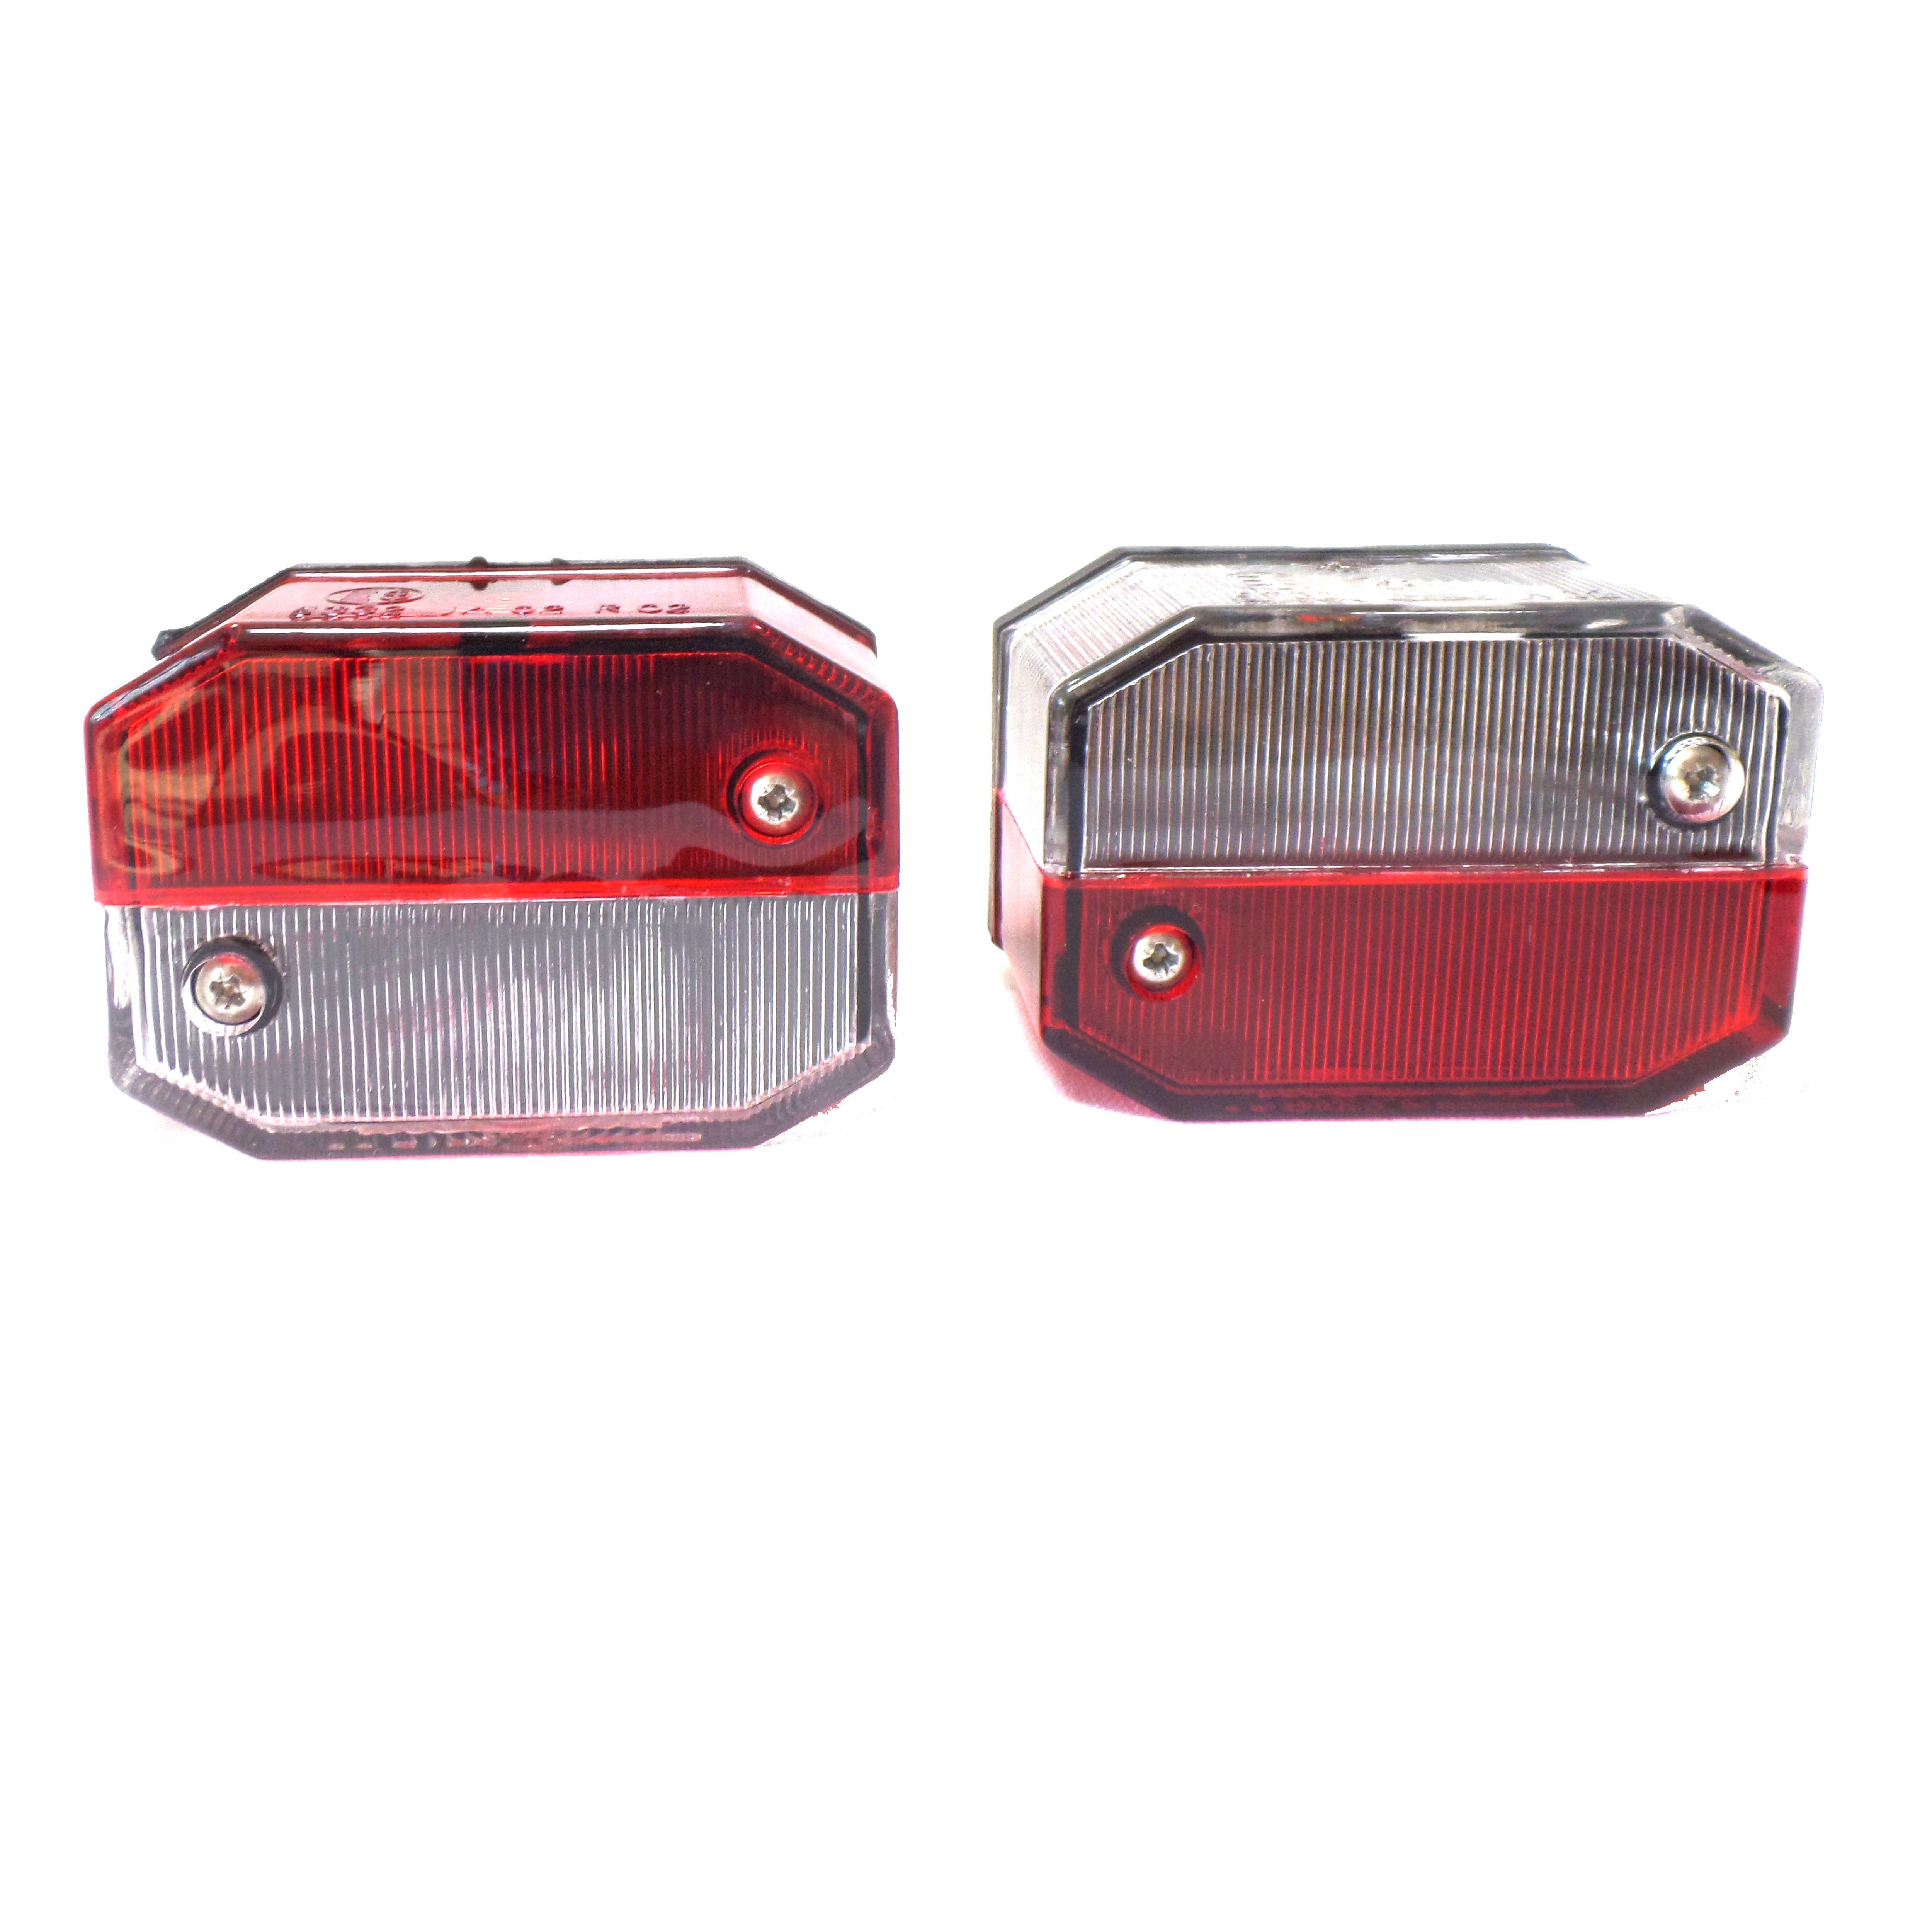 Aspöck Anhänger-Rückleuchte Flexipoint Positionsleuchte - Umrissleuchte rot/weiß, ohne Leuchtmittel, Rot / Weiß